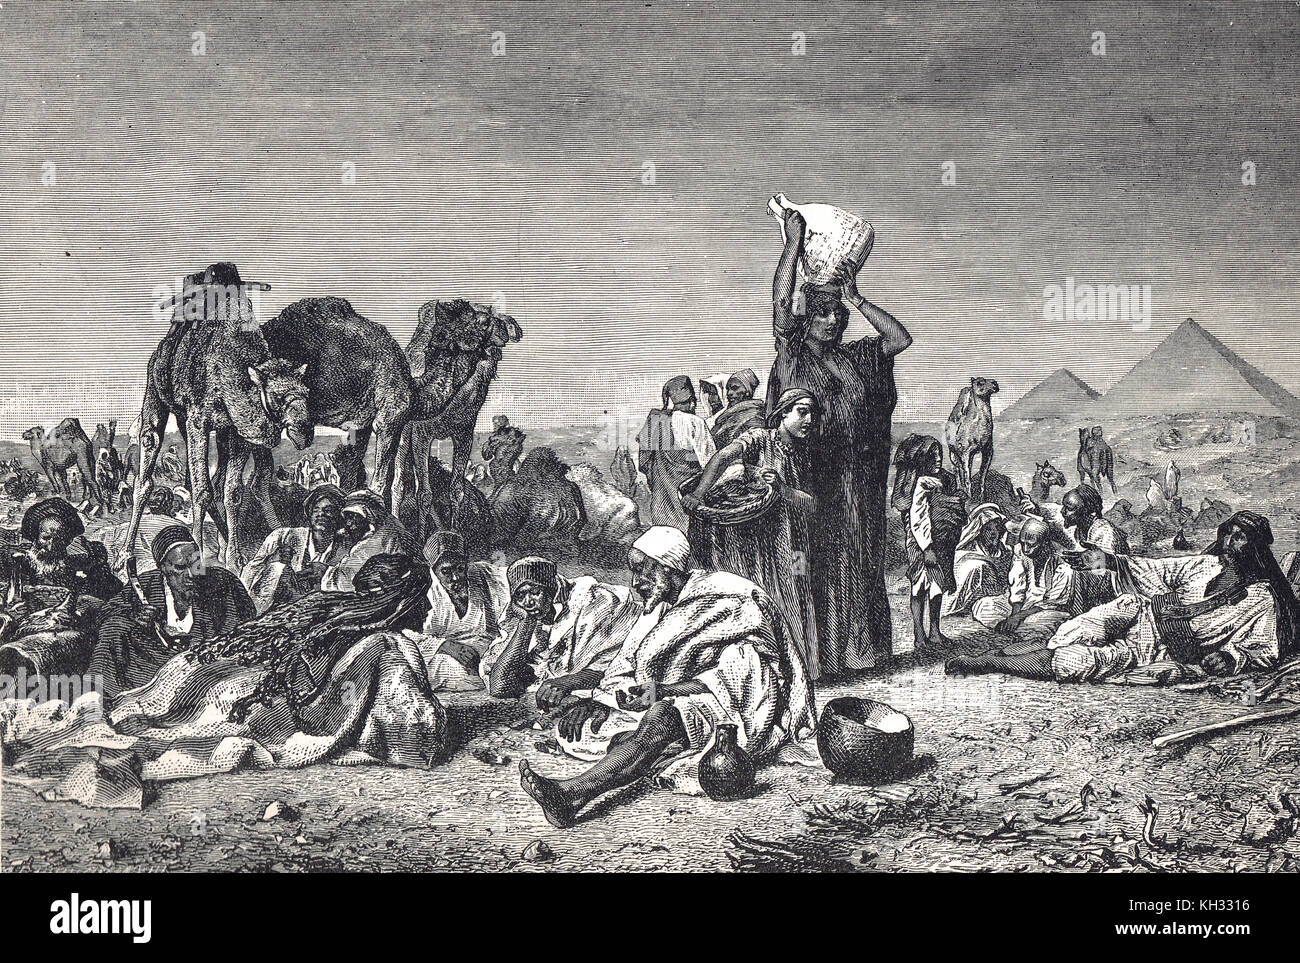 Un campo beduino arabo, scena desertica, nel XIX secolo Foto Stock